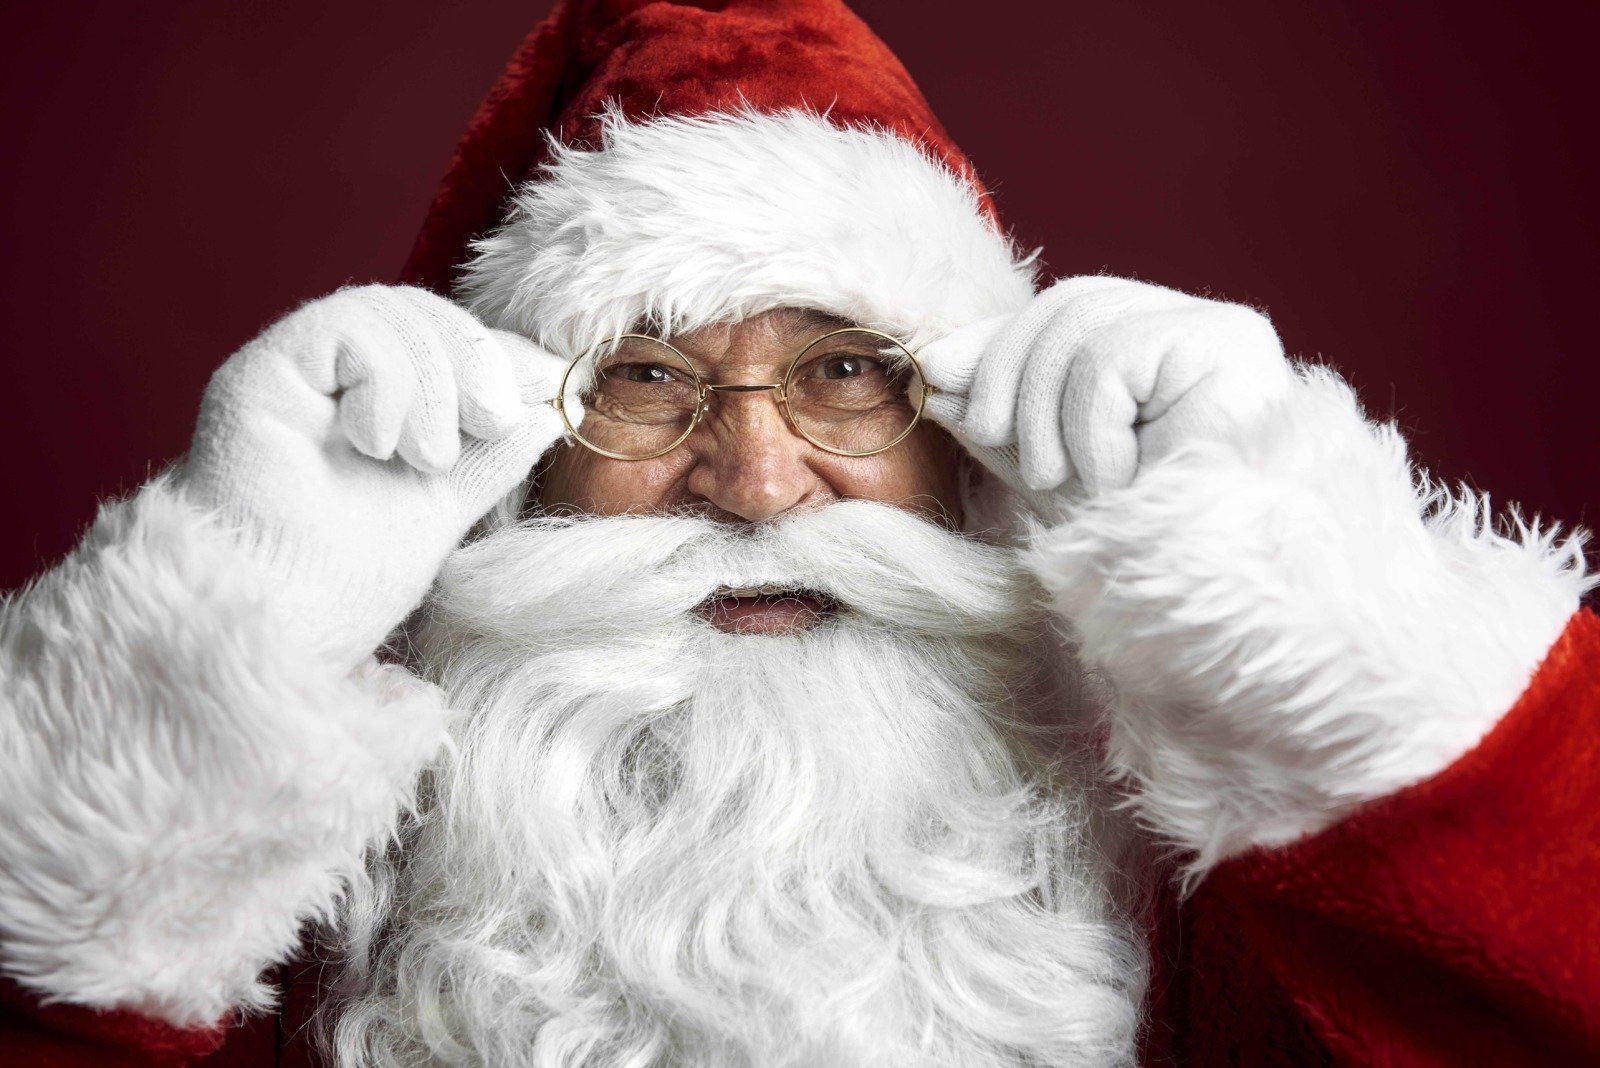 Santa Clauss ha decidido retirar los regalos de navidad de los niños que no dicen la verdad